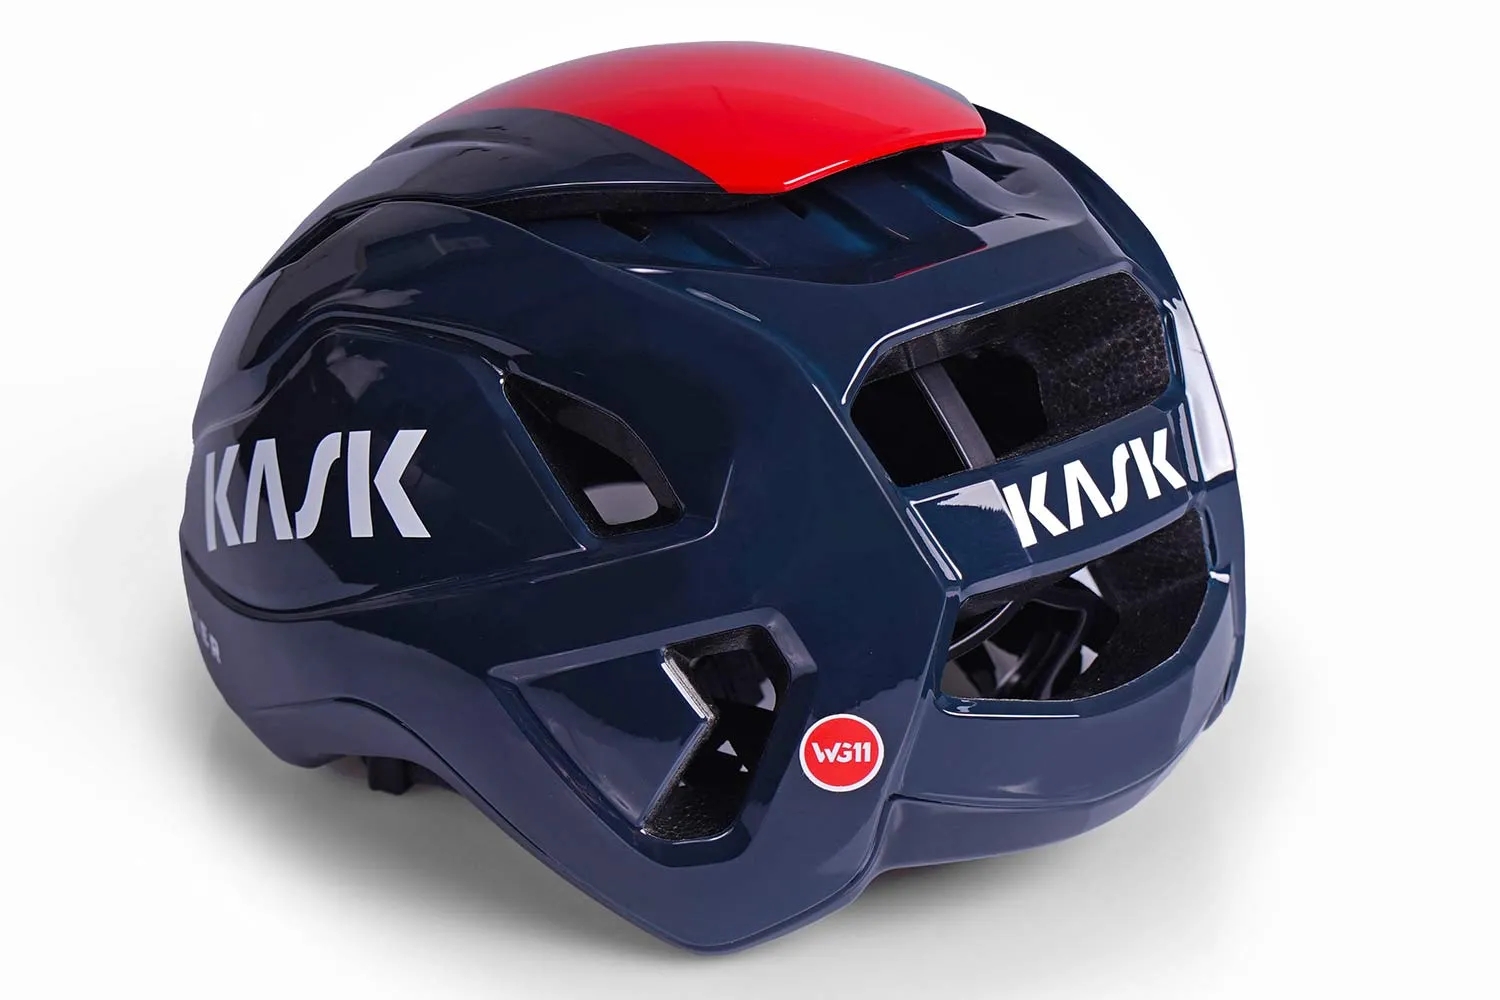 再现可调通风口 Kask新款Wasabi气动公路头盔